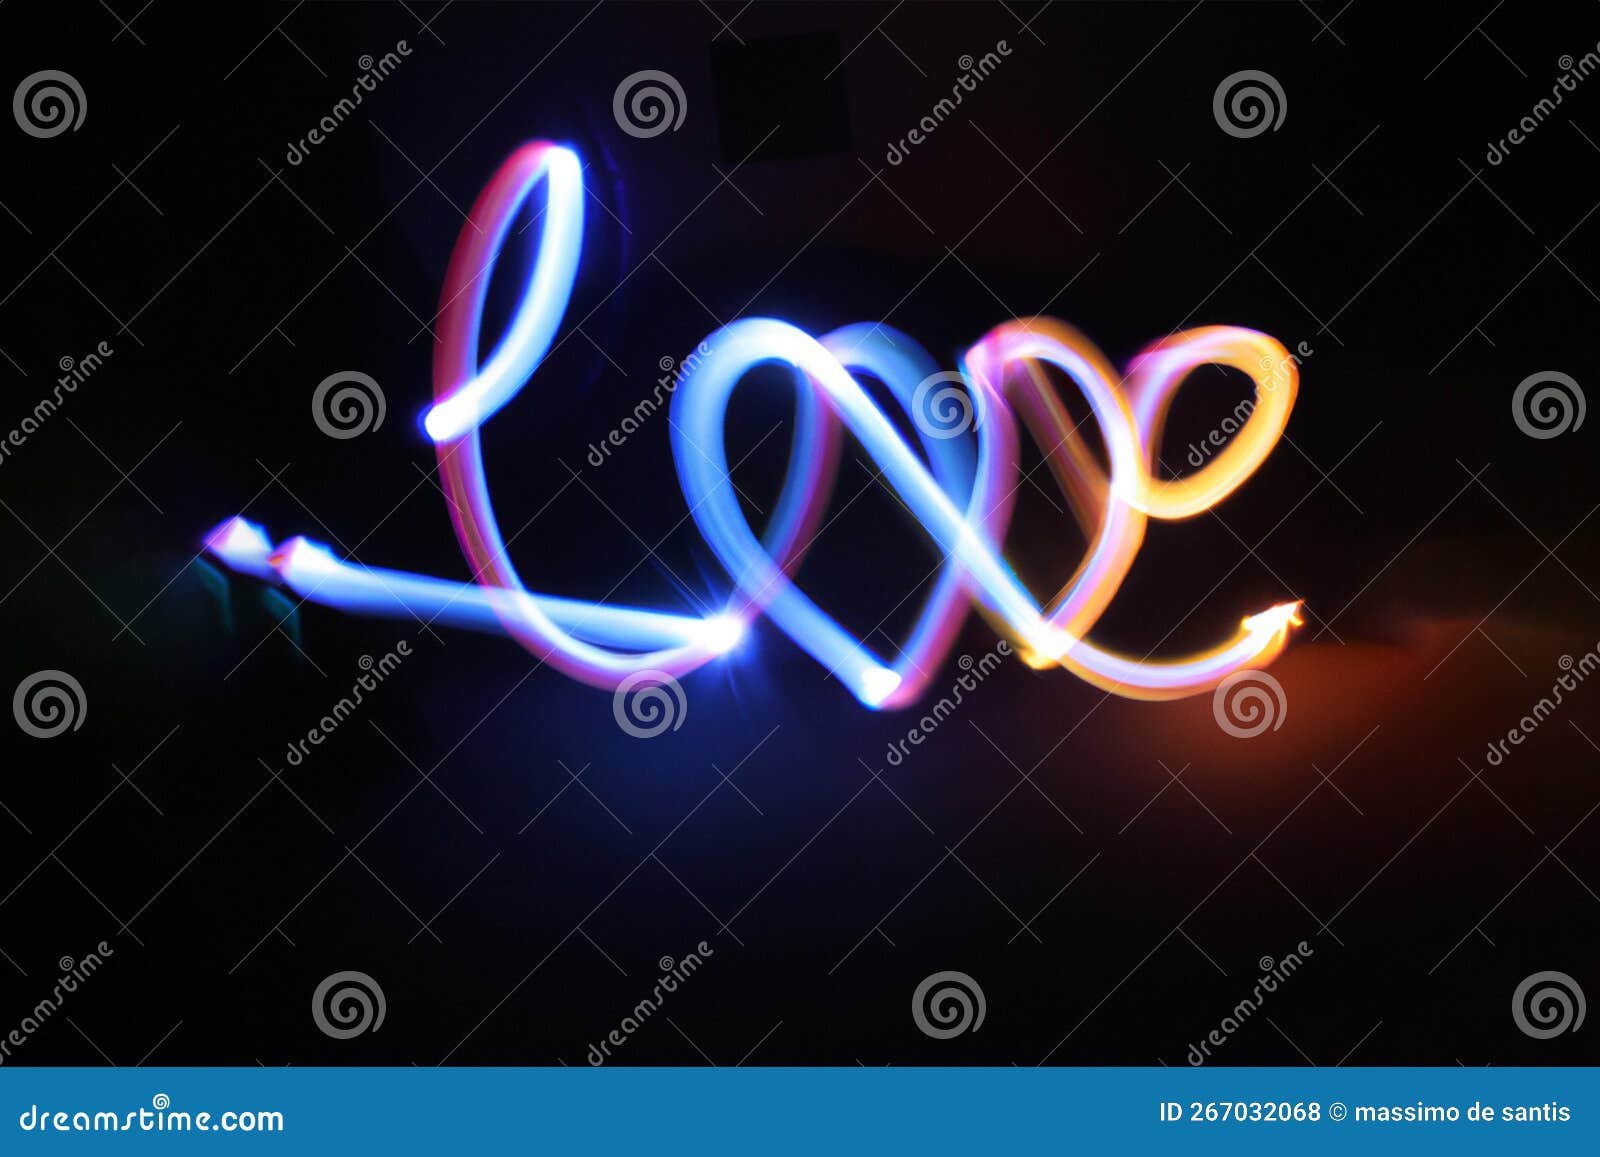 written love in neon